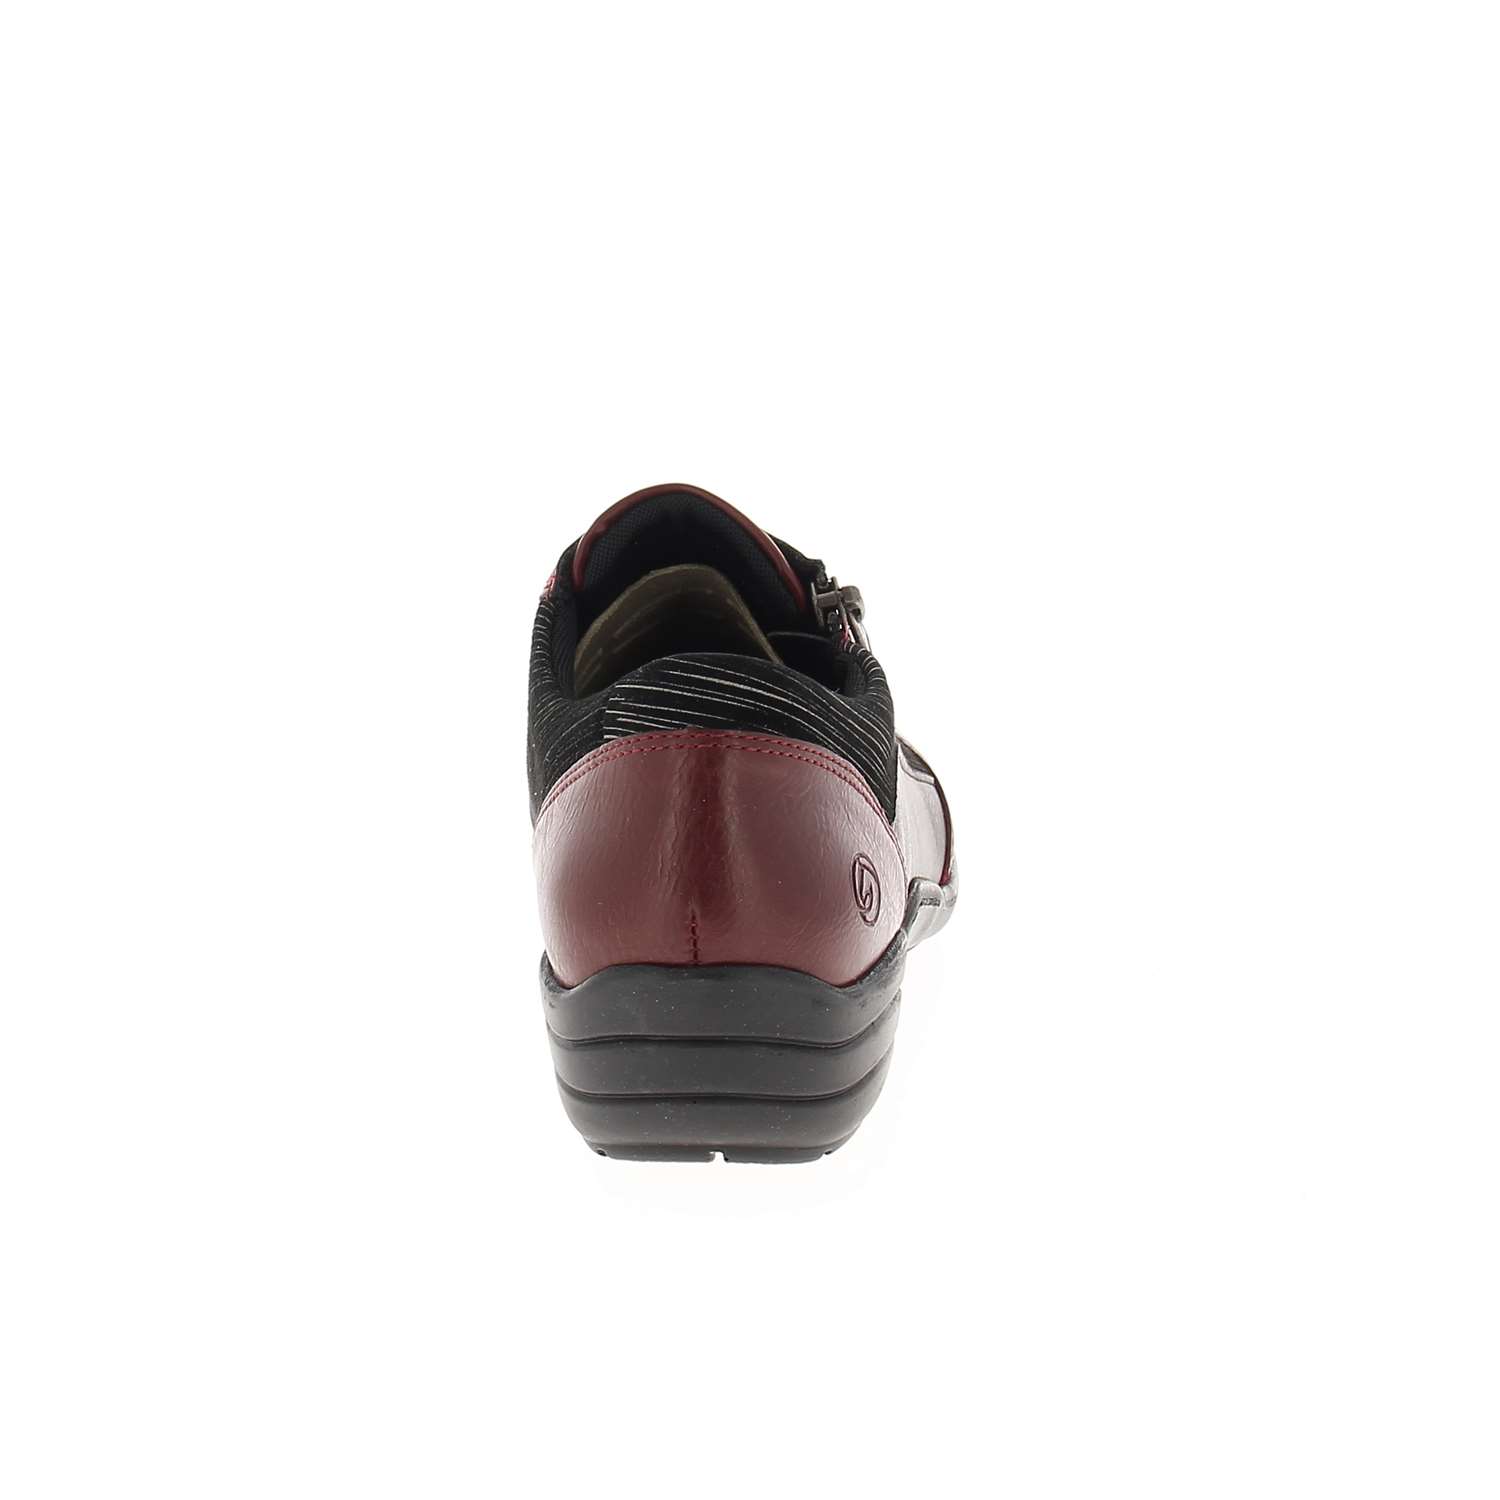 04 - REMONU - REMONTE - Chaussures à lacets - Cuir